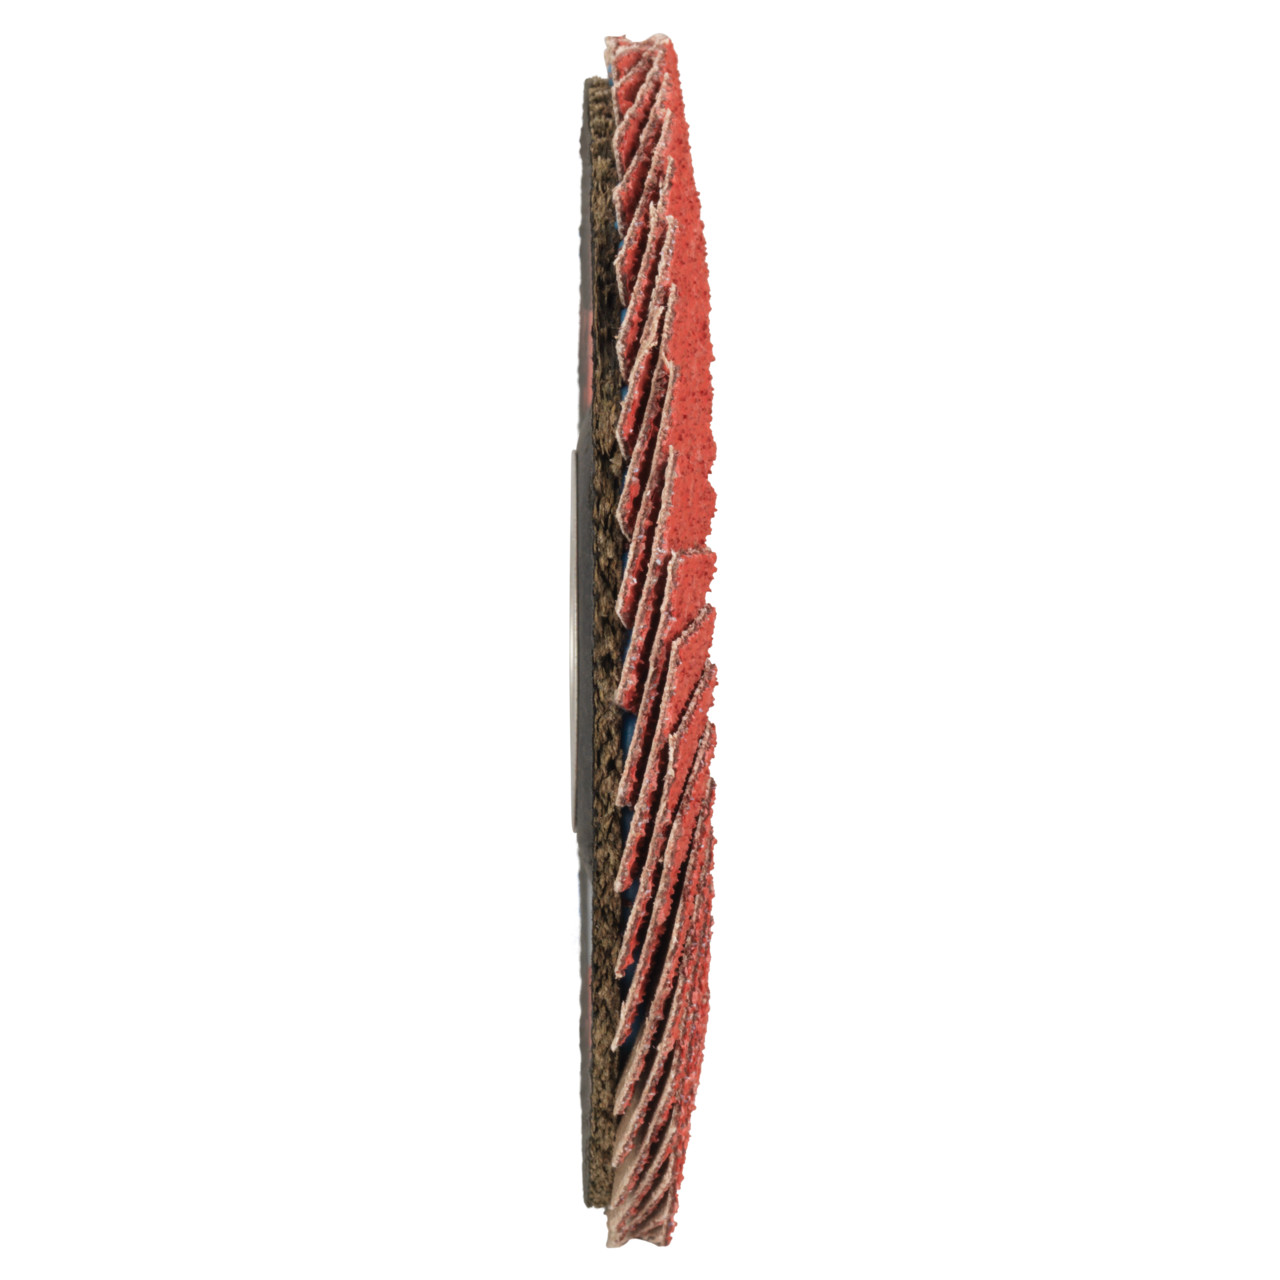 TYROLIT getande borgring DxH 115x22,23 CERAMIC voor roestvrij staal, P80, vorm: 28A - rechte uitvoering (uitvoering glasvezeldragerhuis), Art. 34166687